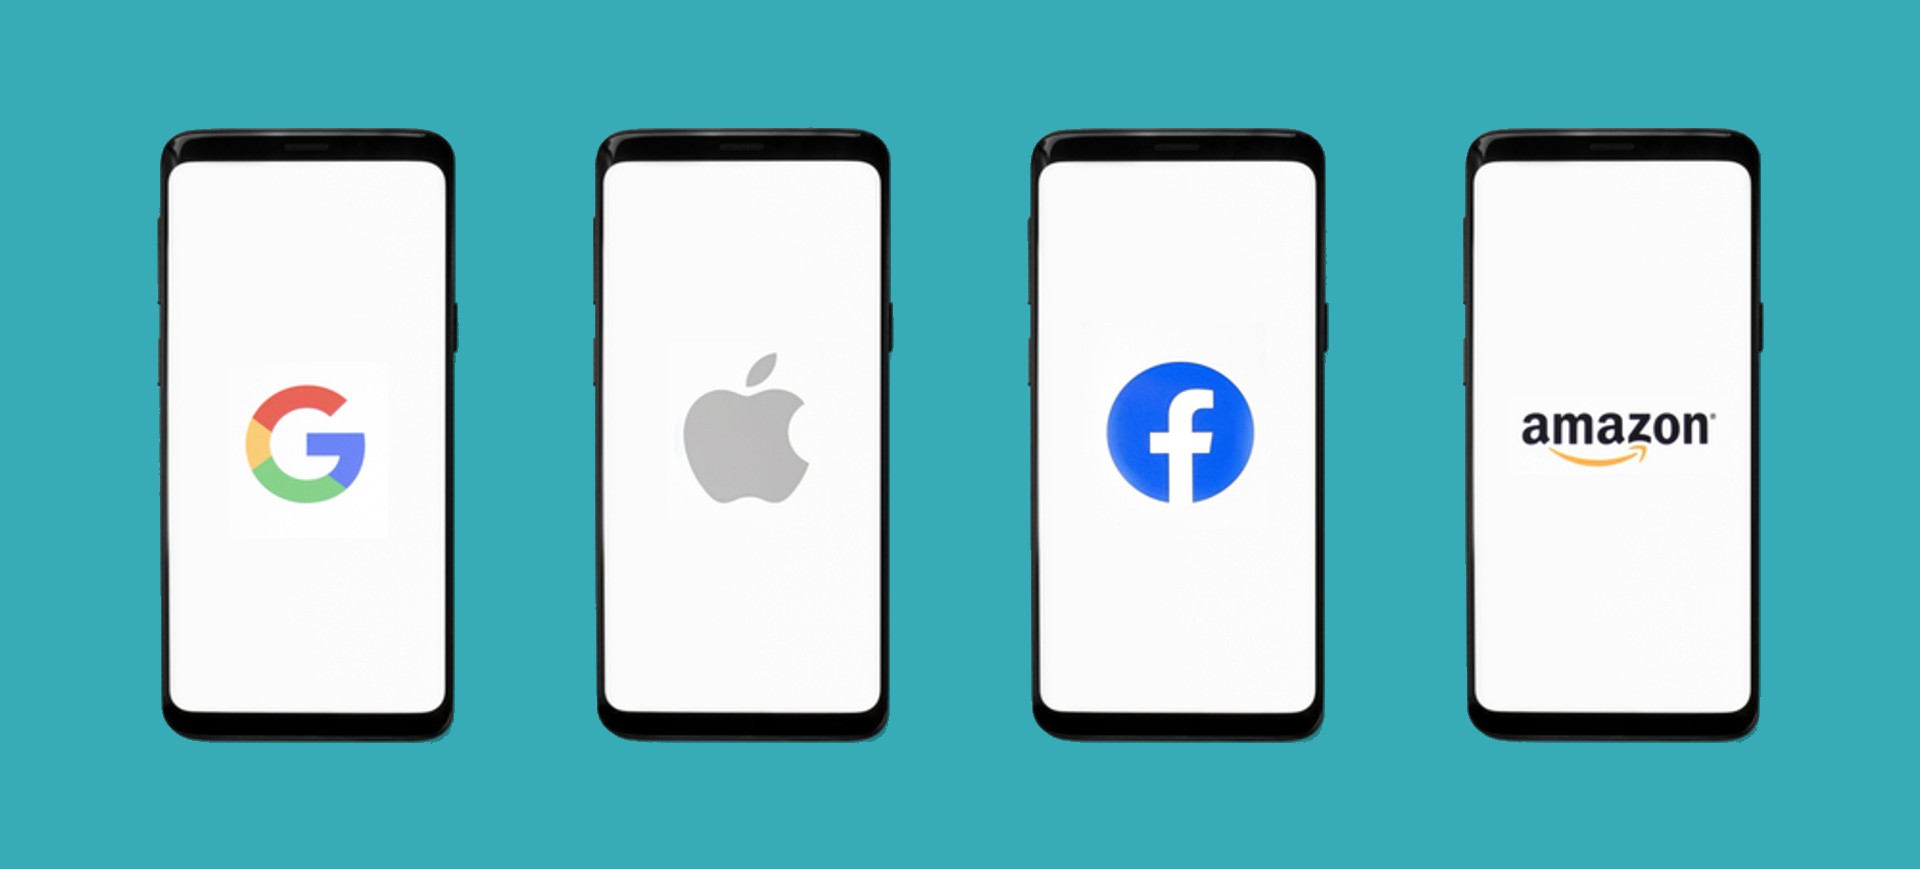 Imagens de telas de quatro celulares colocados um ao lado do outro, cada um com o logotipo de uma empresa de TI, da esquerda para a direita: Google, Apple, Facebook e Amazon, representando as Big Techs